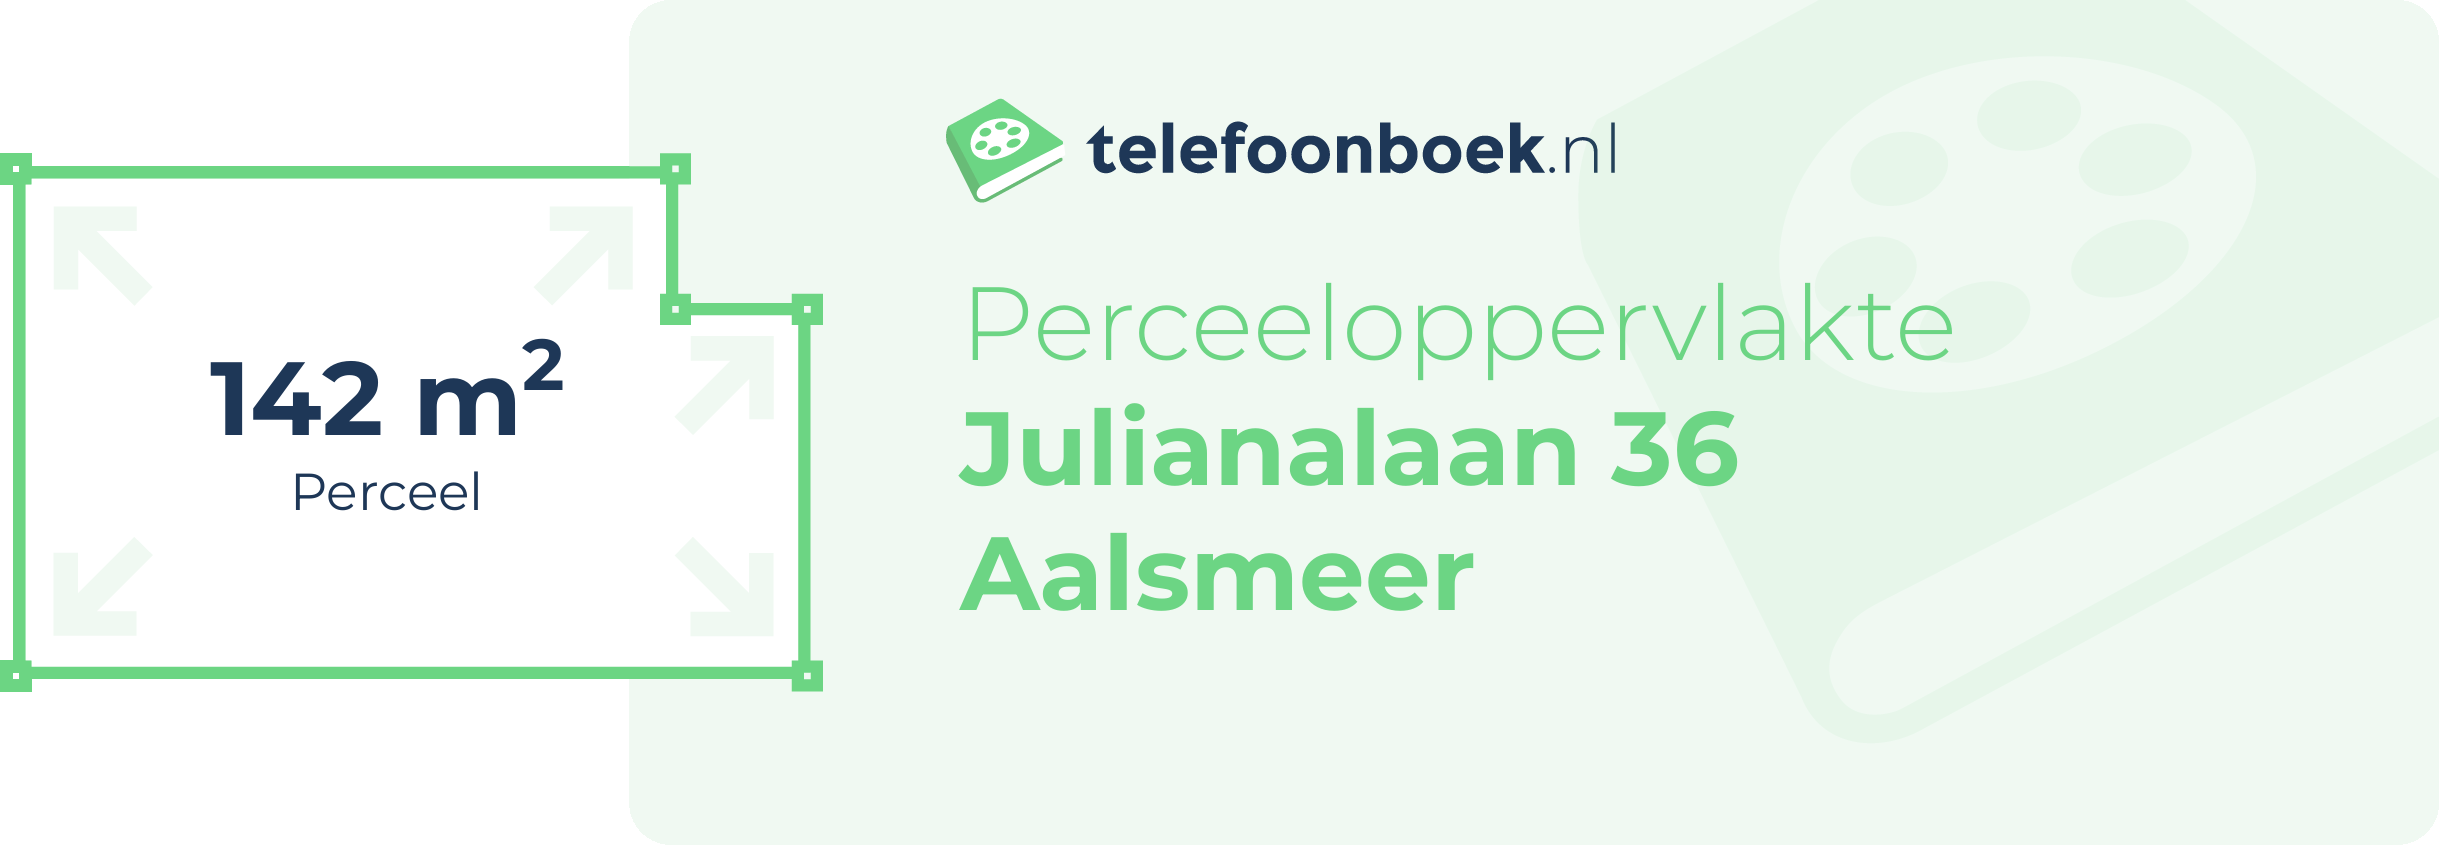 Perceeloppervlakte Julianalaan 36 Aalsmeer